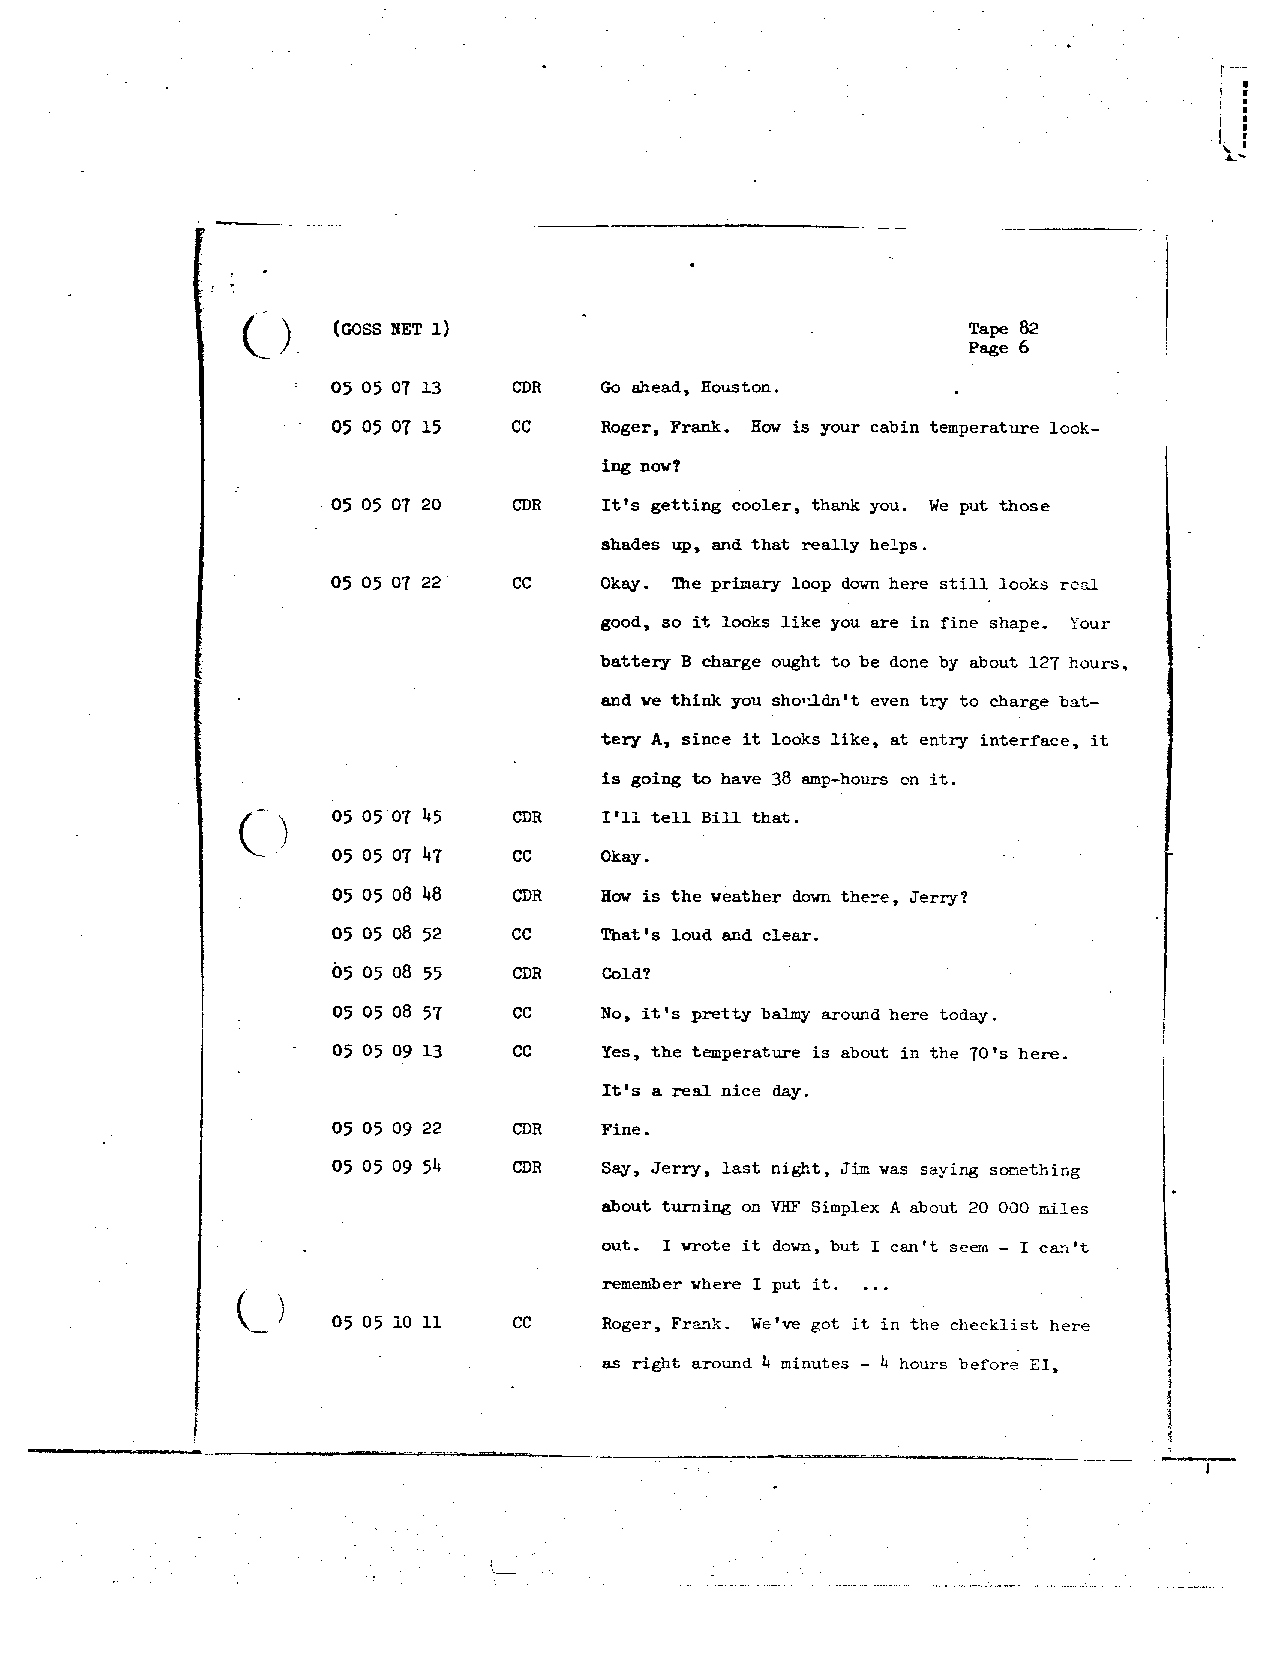 Page 682 of Apollo 8’s original transcript